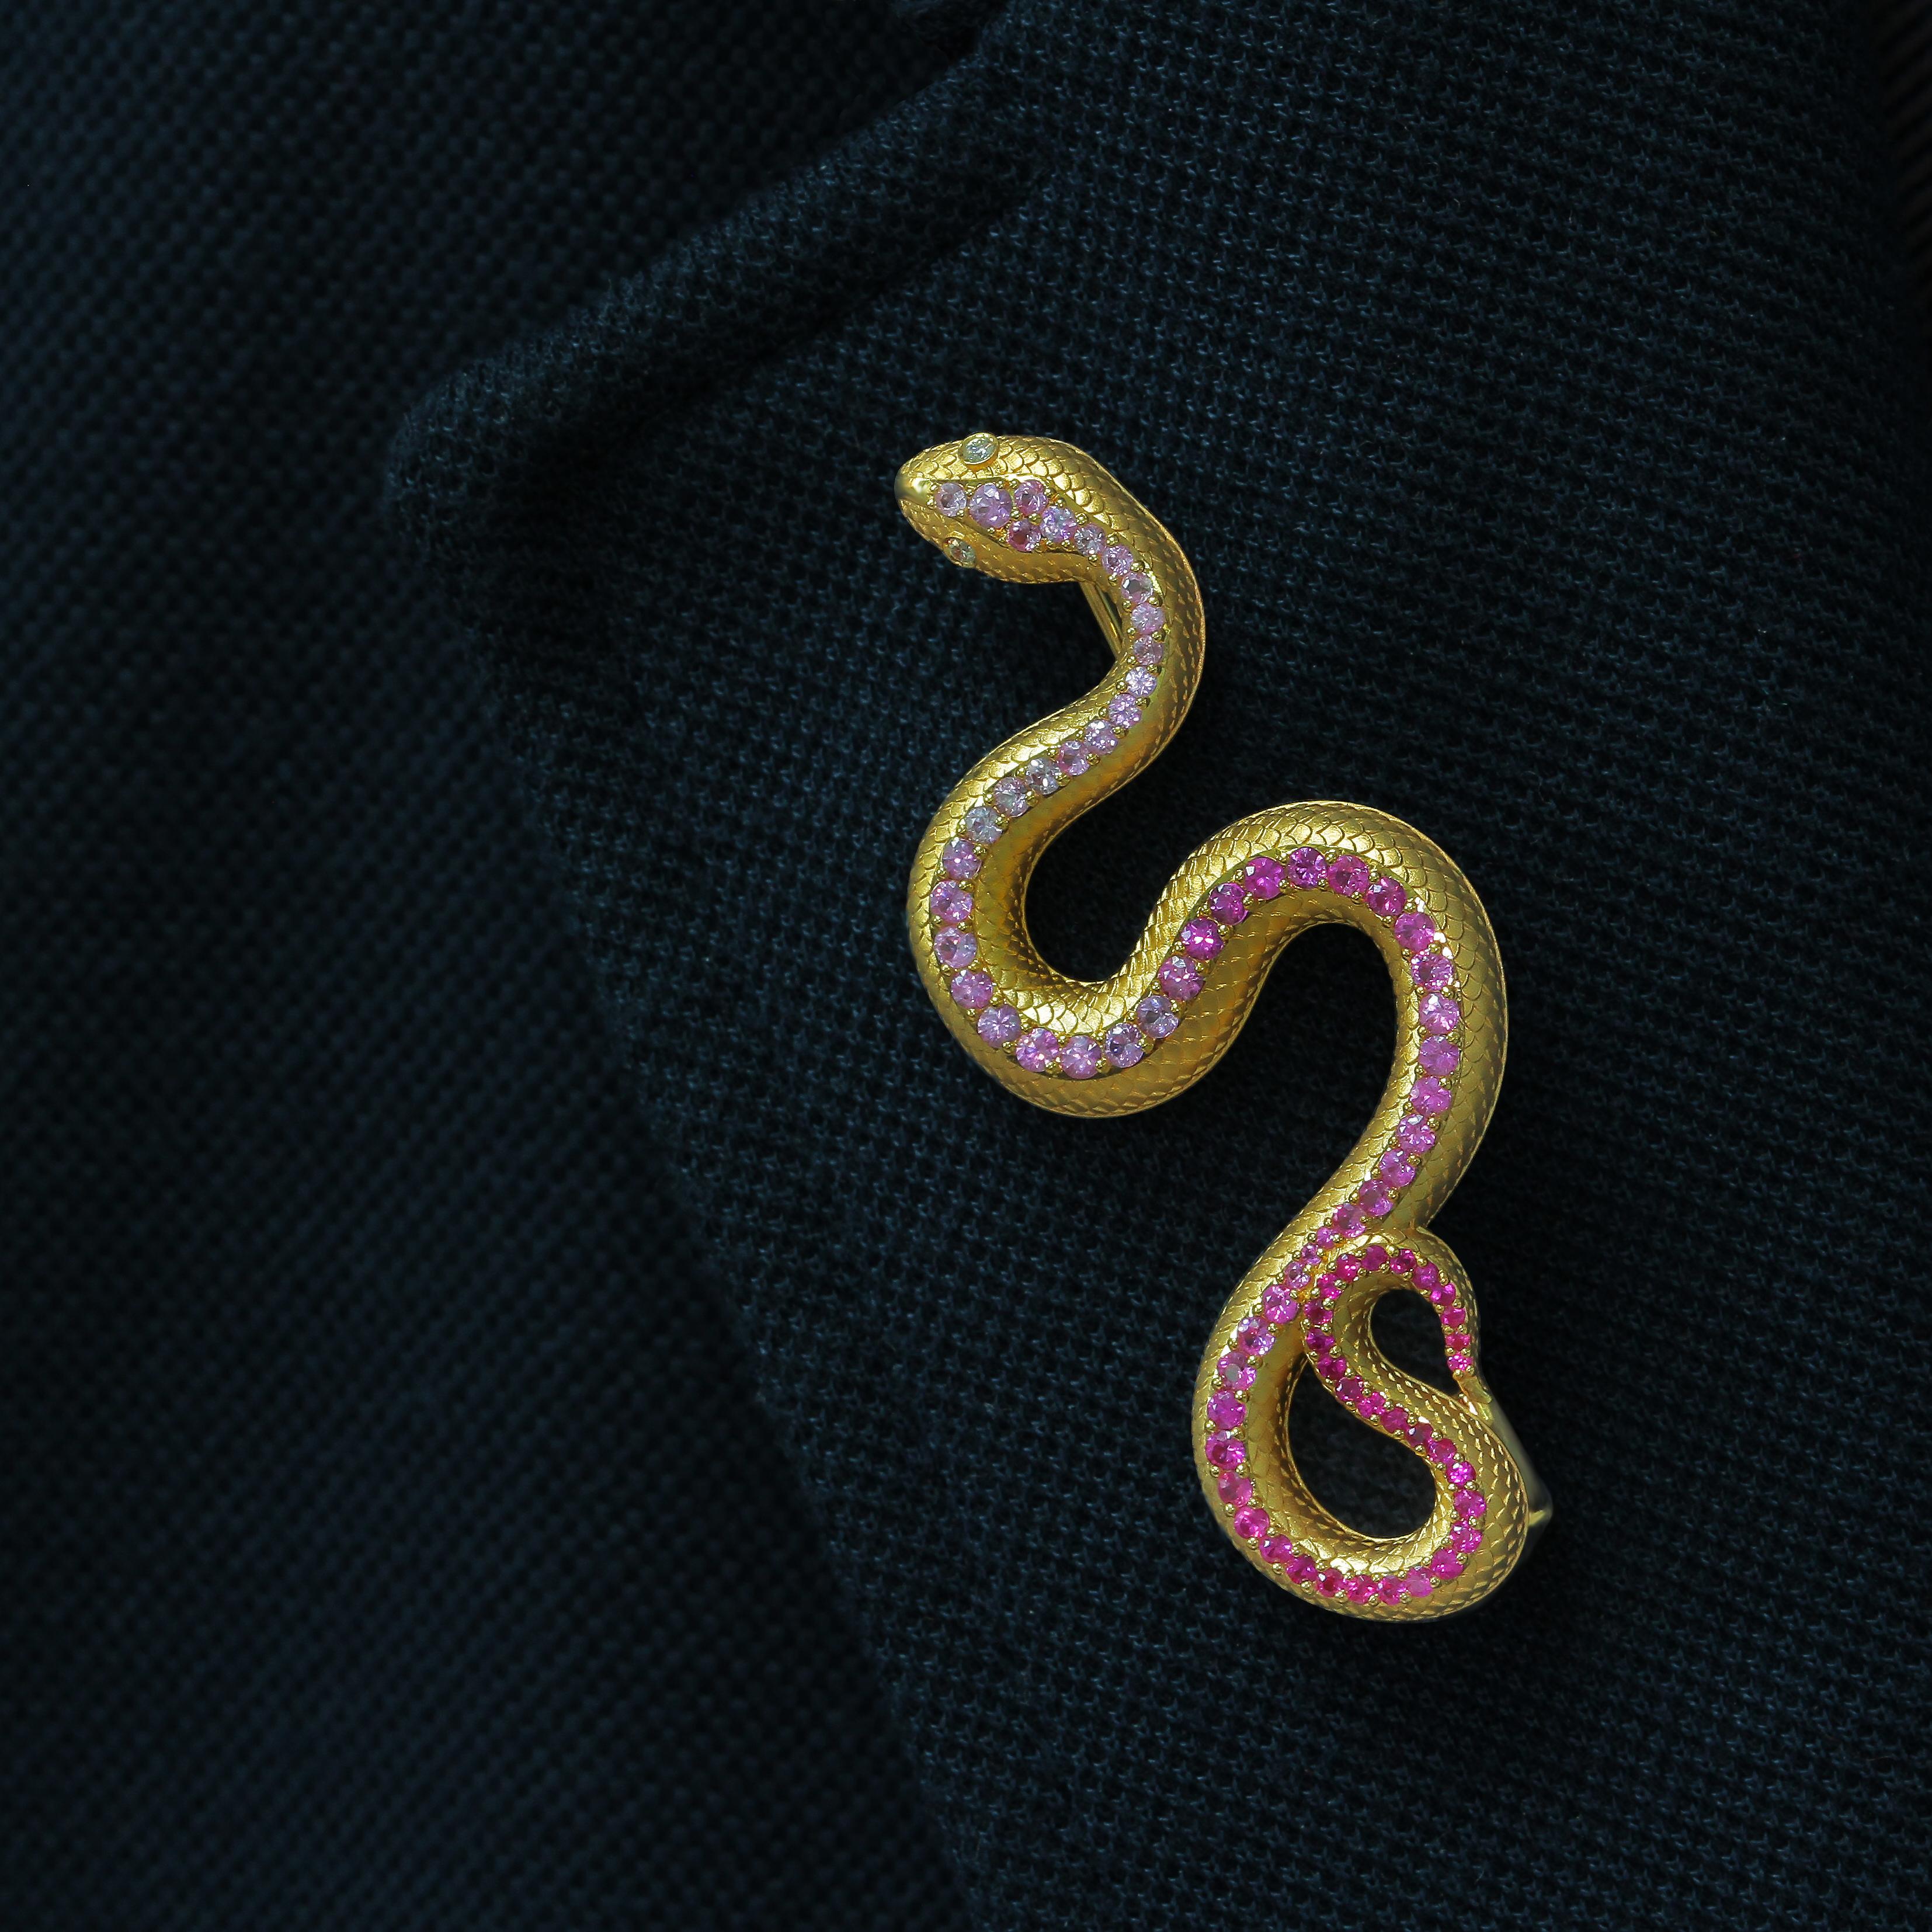 Schlangenbrosche mit rosa Saphiren und Diamanten aus 18 Karat Gelbgold

Werfen Sie einen Blick auf diese hochdetaillierte Brosche, die die ganze Weisheit der Schlange verbreitet. Sorgfältig ausgewählte Farbabstufungen von rosa Saphiren zu Diamanten